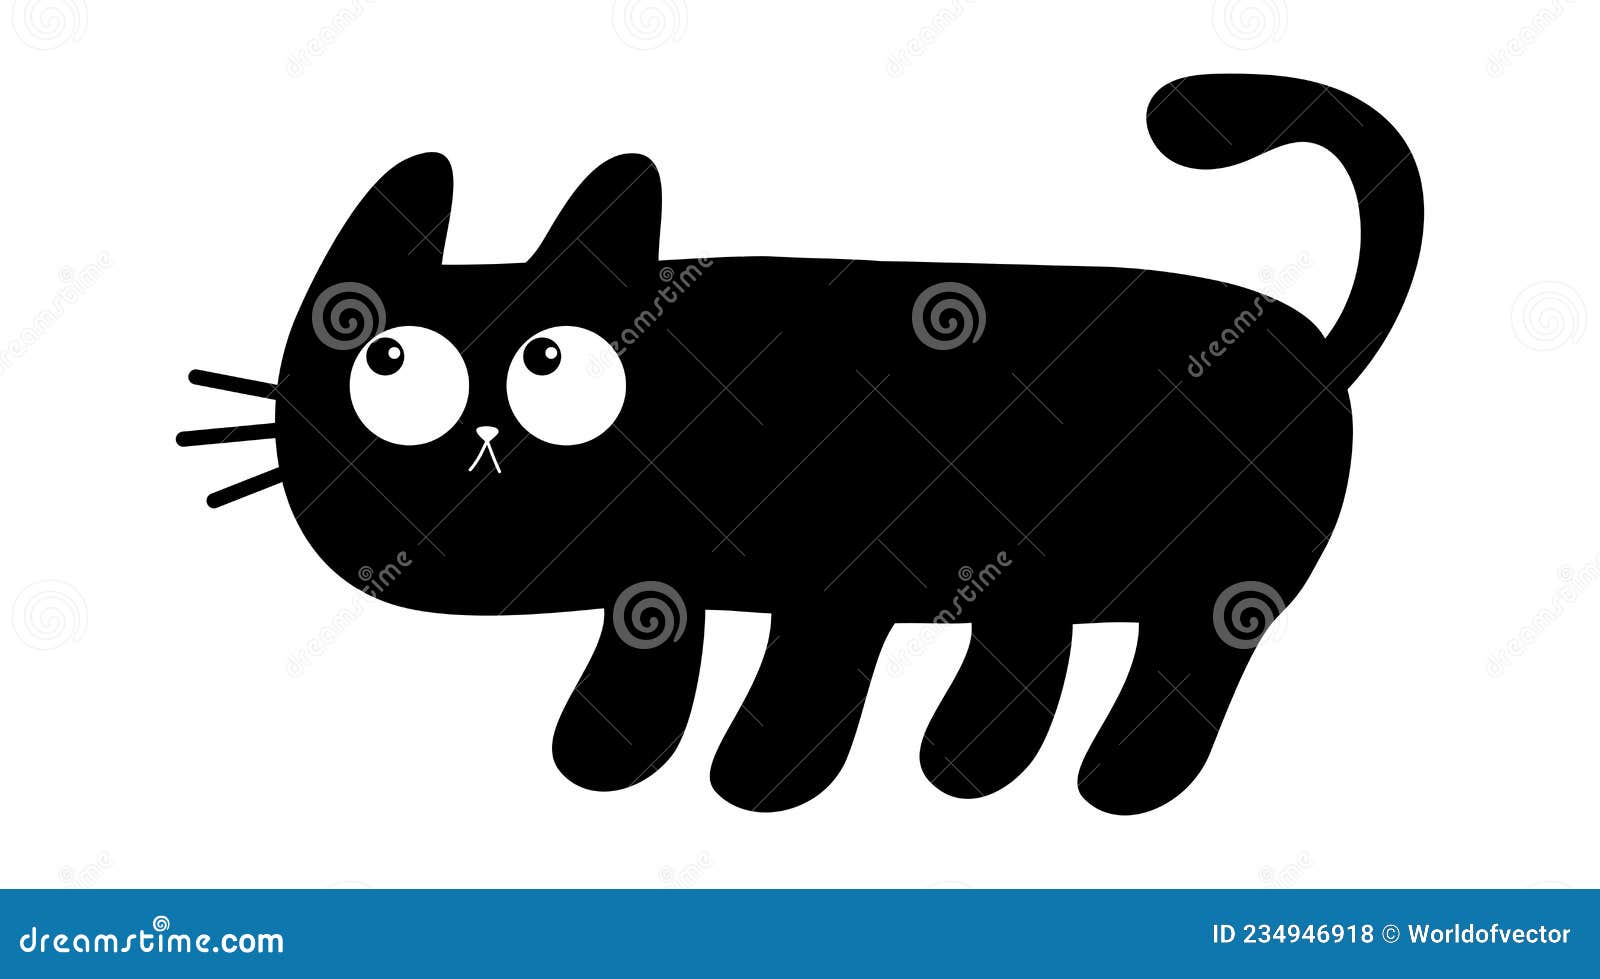 ilustração em vetor gato kawaii fofo de gatinho feliz dos desenhos